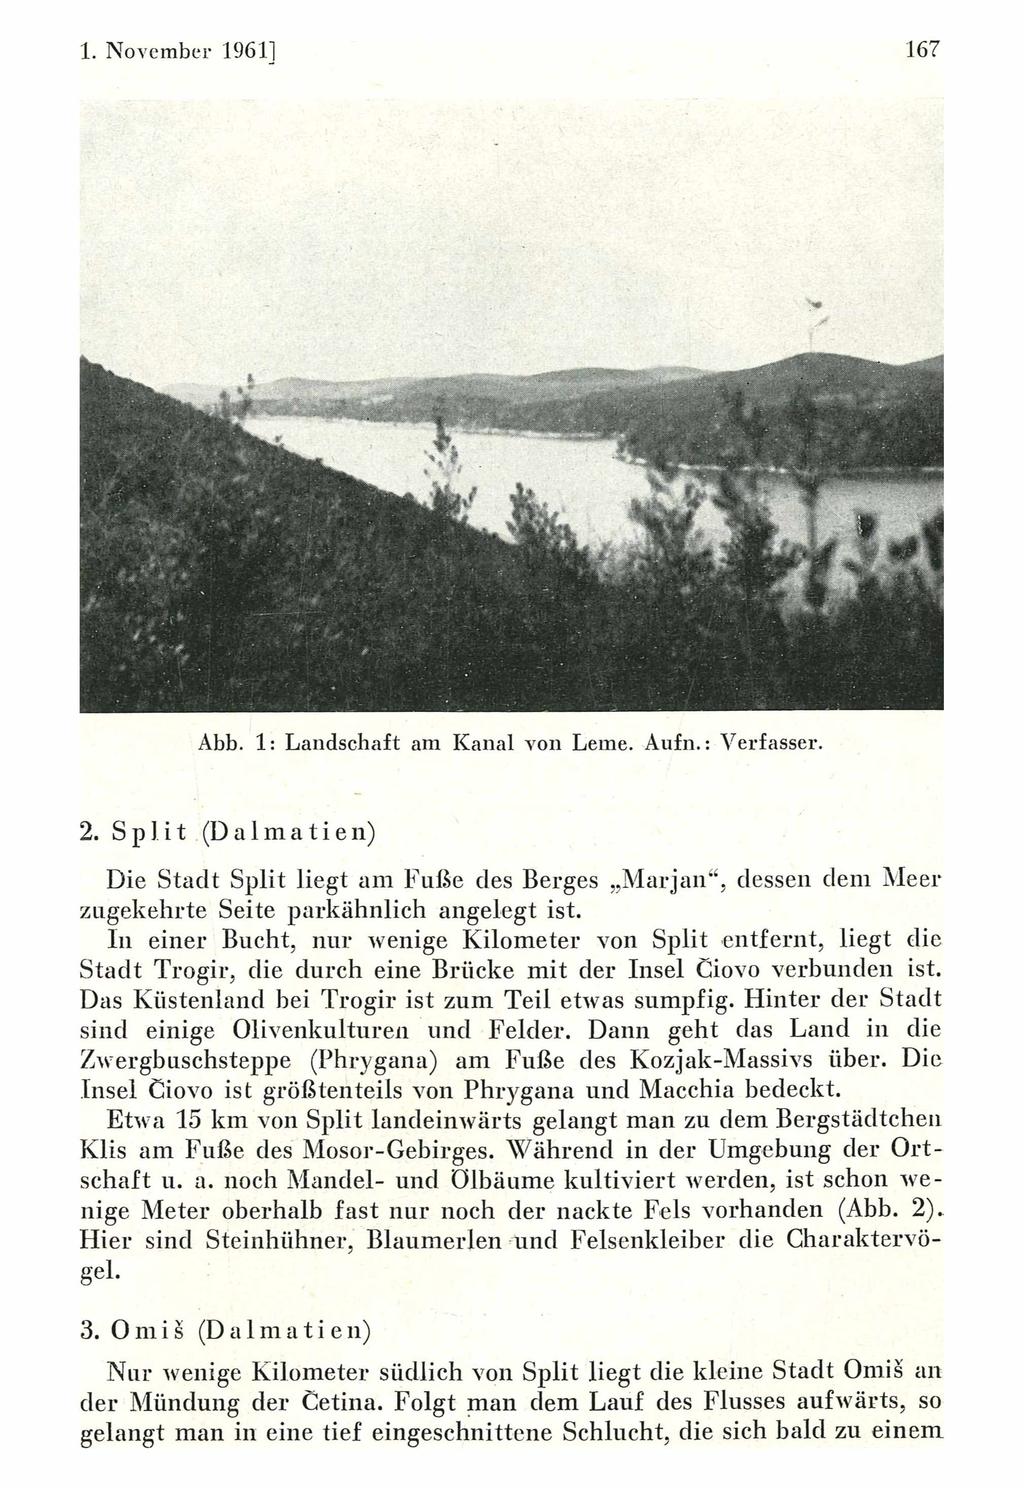 1. November 1961] Ornithologische Gesellschaft Bayern, download unter www.biologiezentrum.at 167 Abb. 1: Landschaft am Kanal von Lerne. Aufn.: Verfasser. 2.